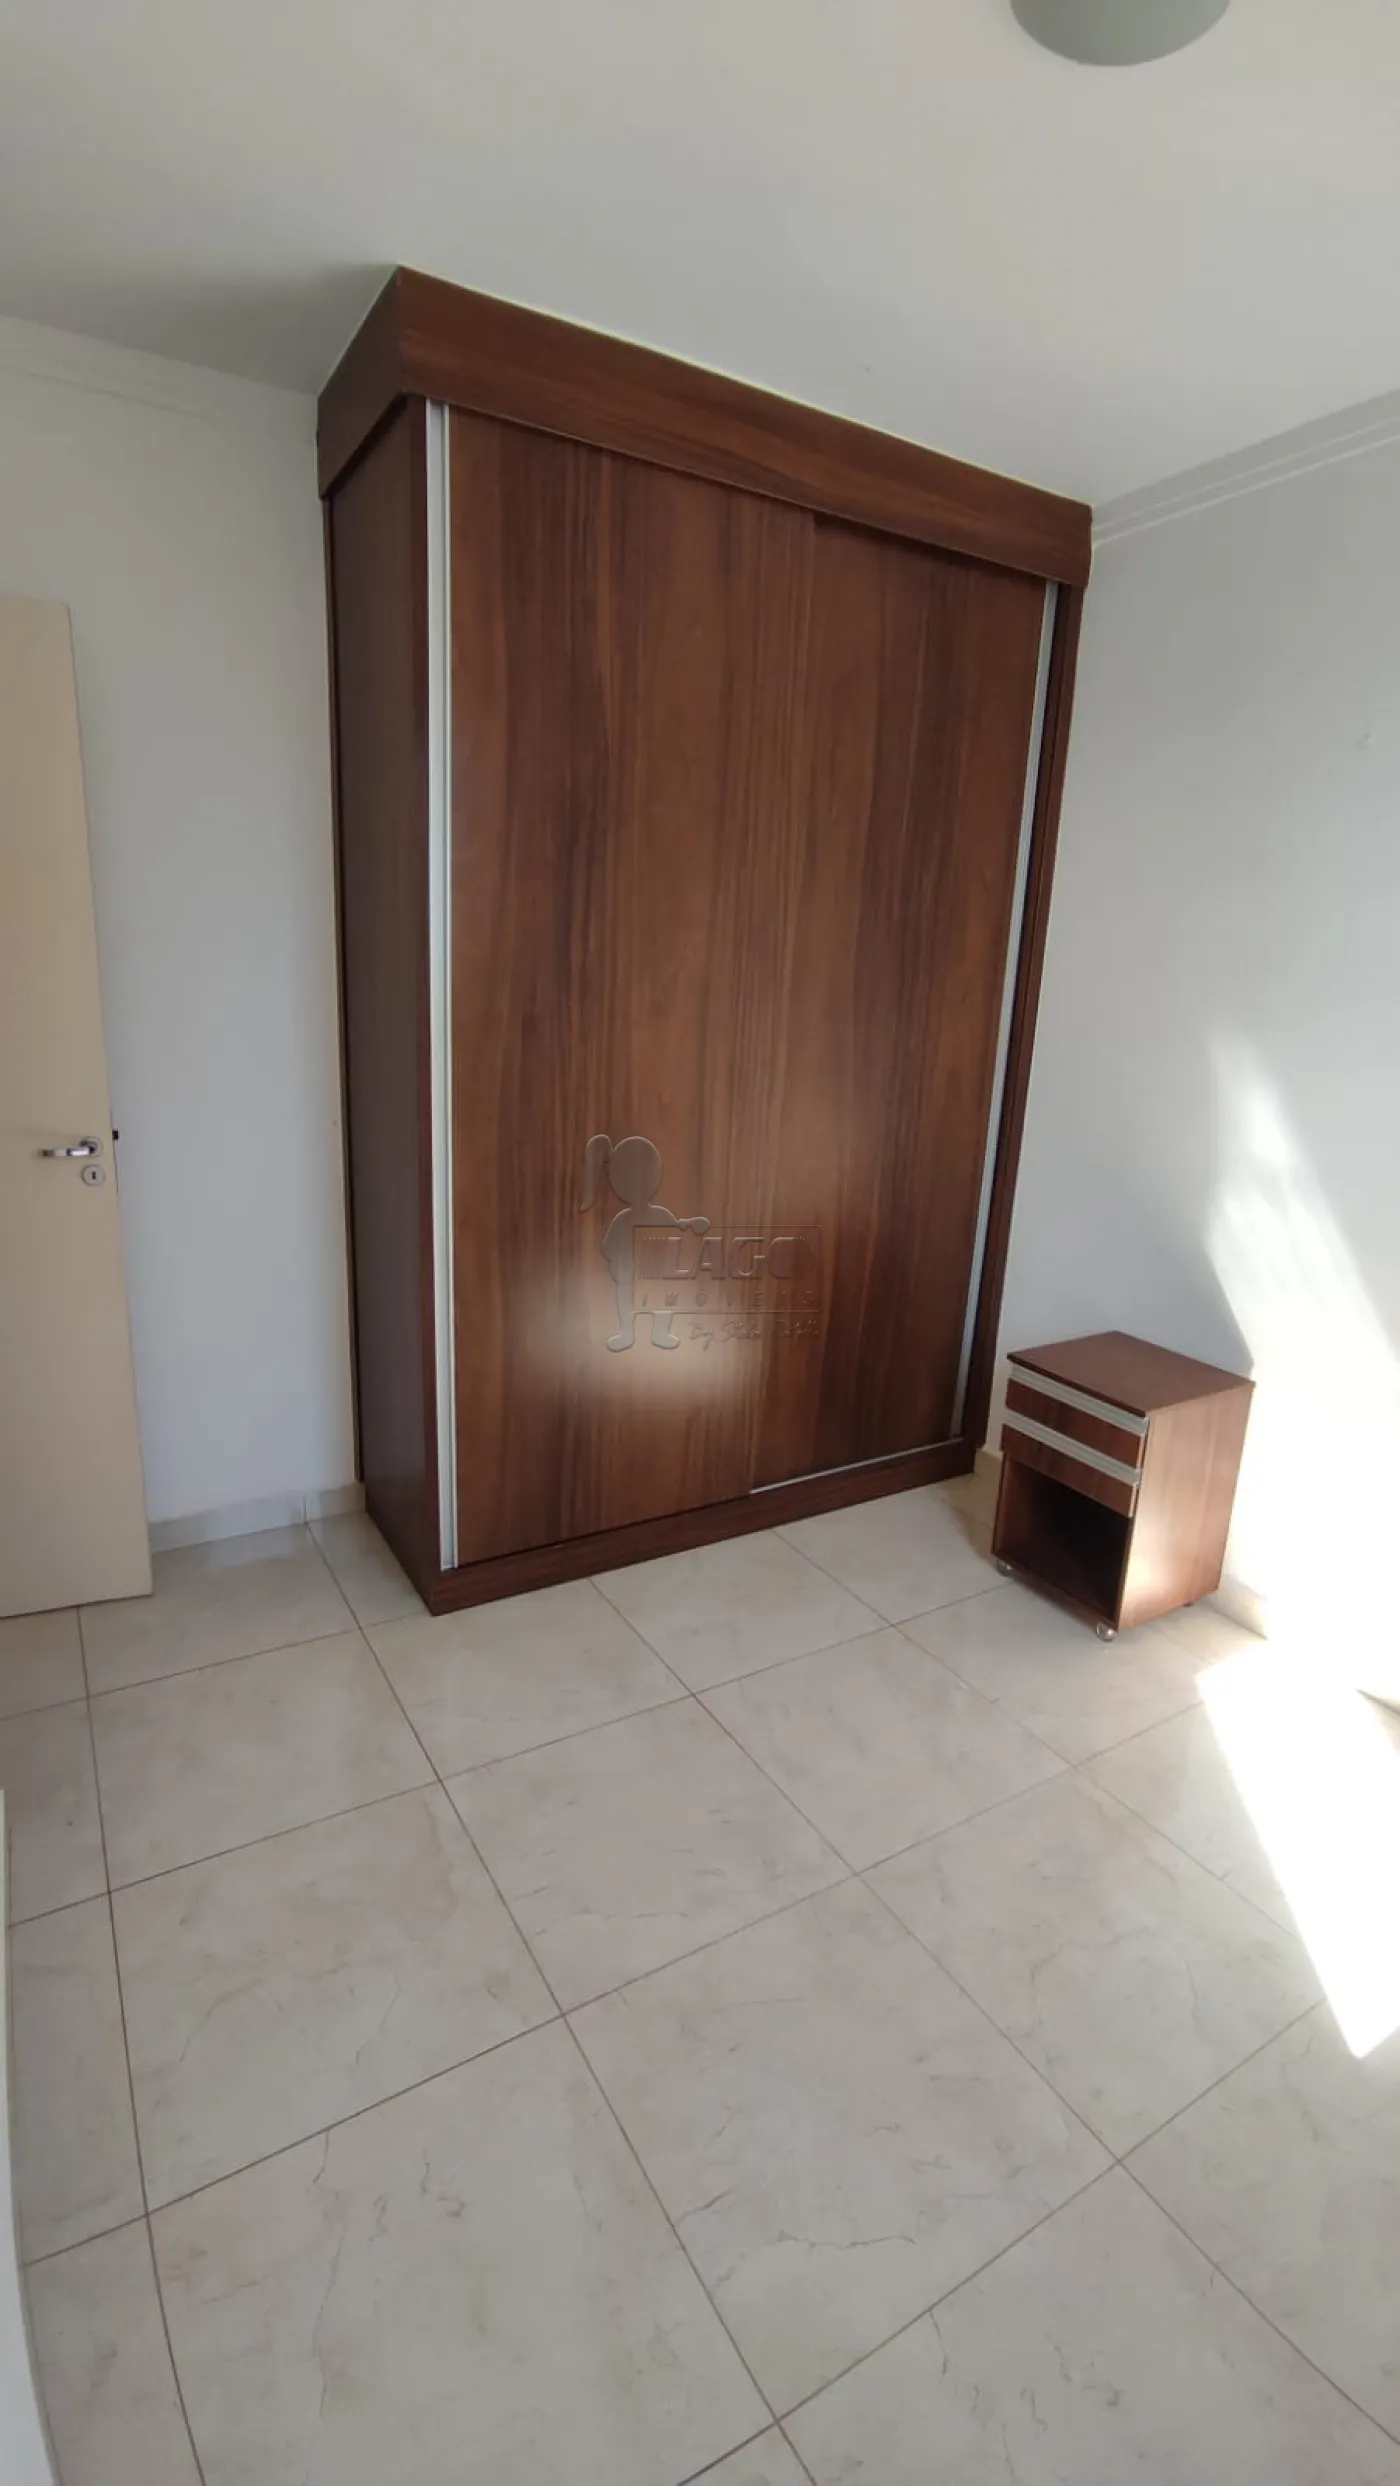 Comprar Apartamento / Cobertura duplex em Ribeirão Preto R$ 350.000,00 - Foto 9